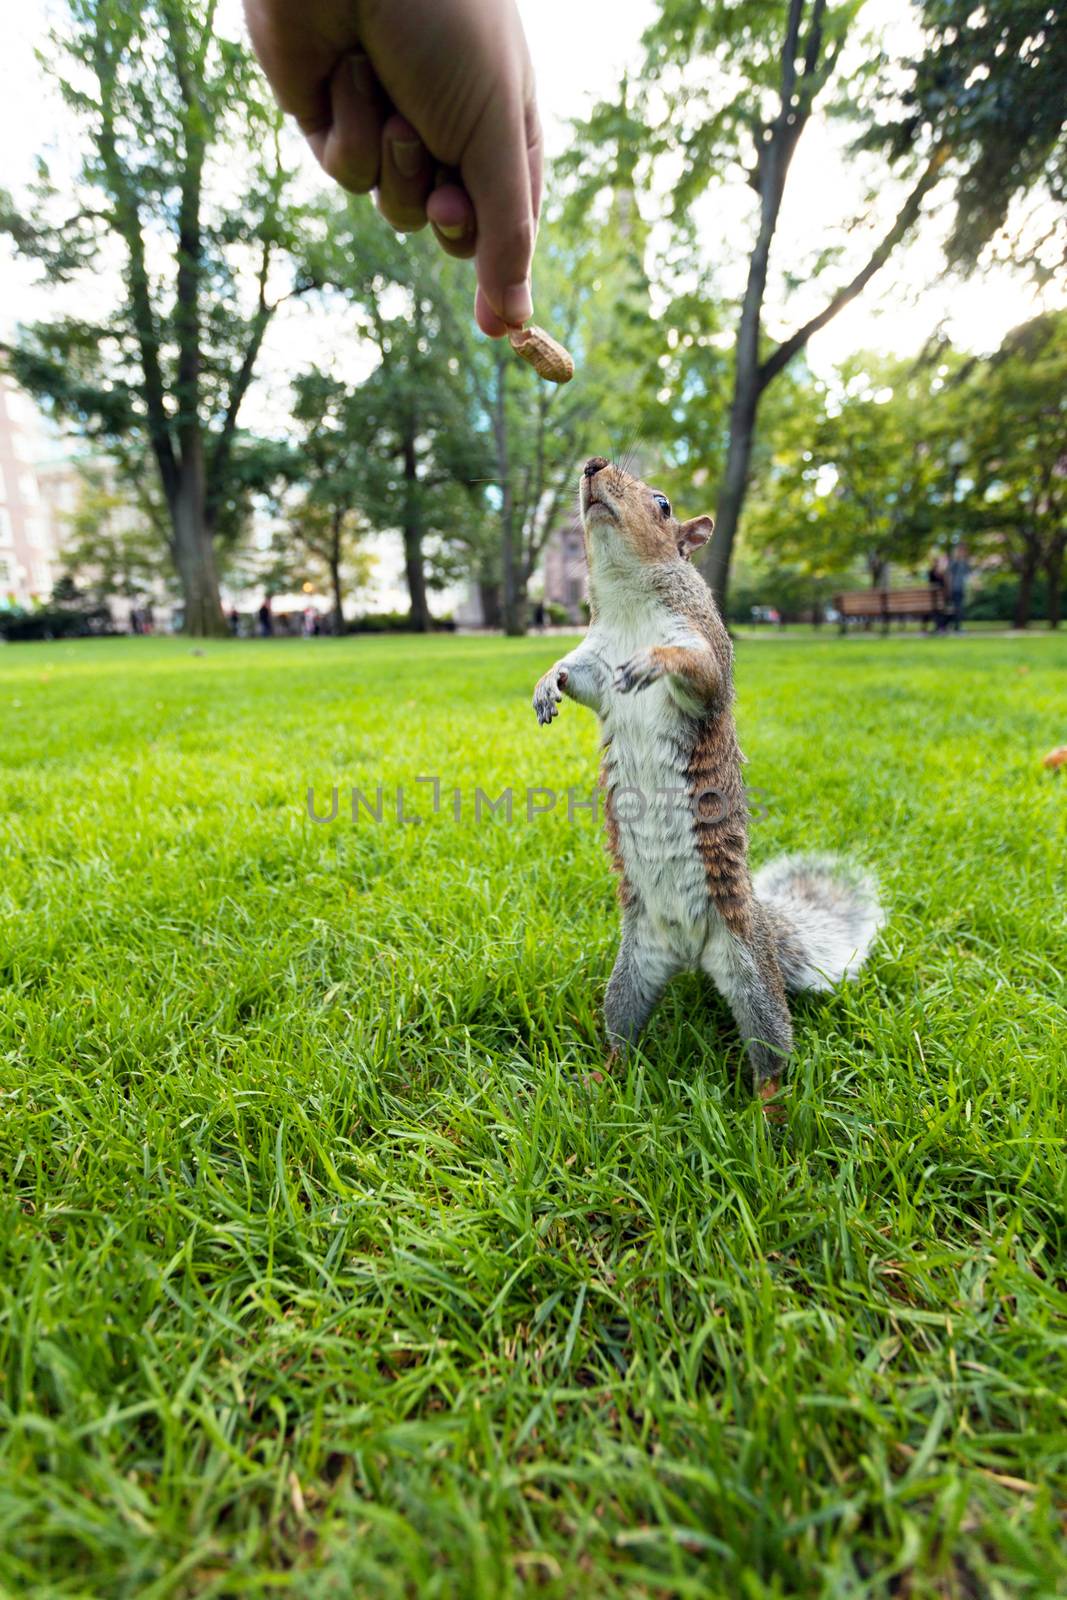 Feeding Wild Squirrel a Peanut by graficallyminded